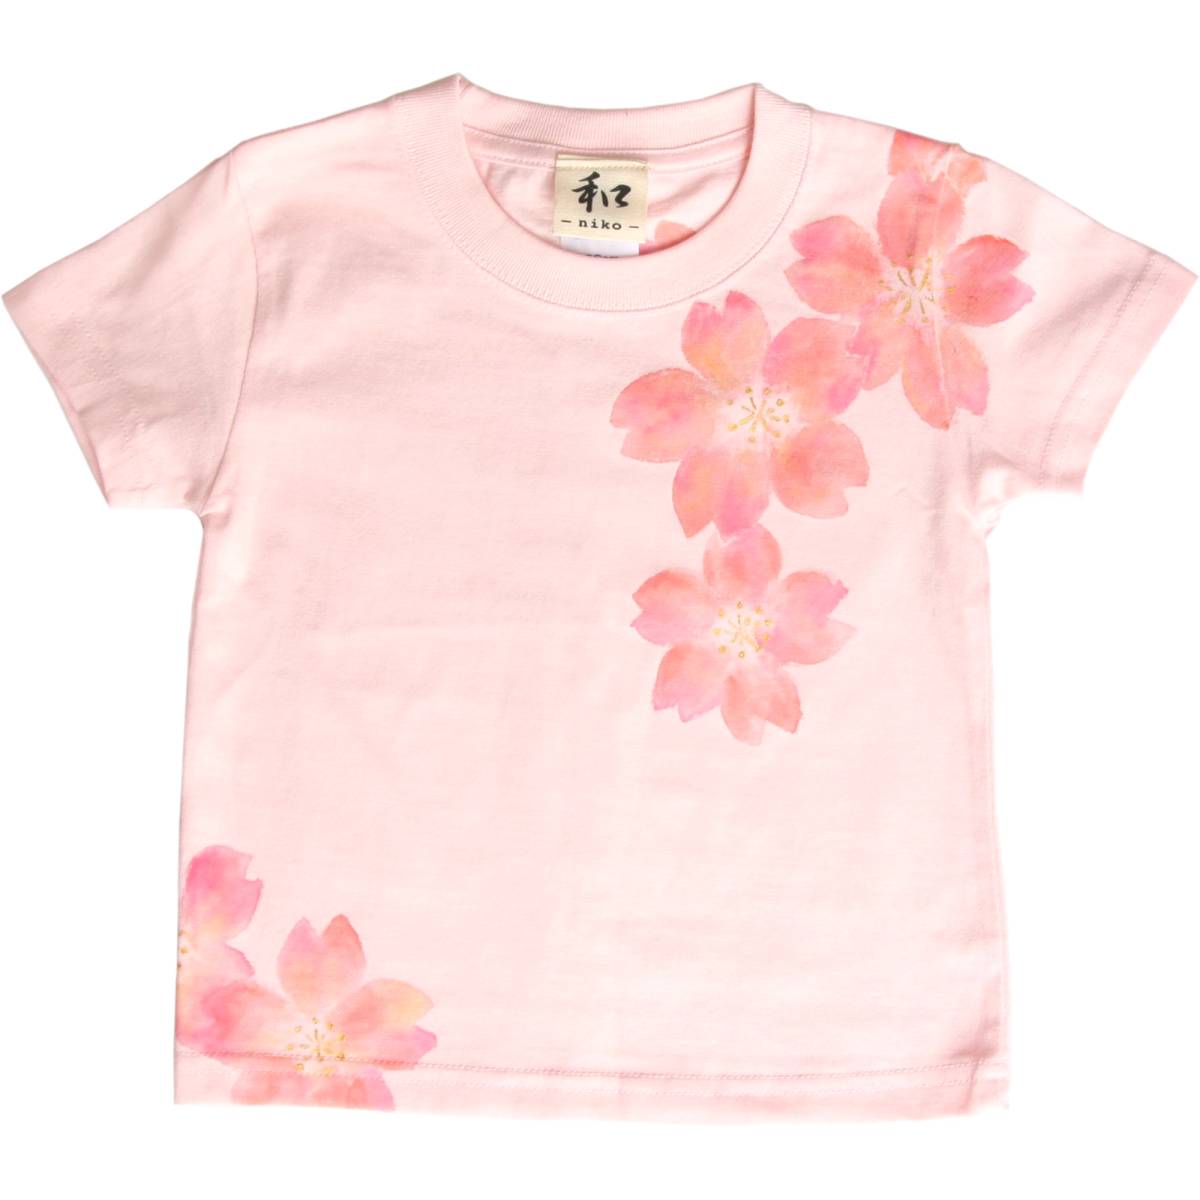 Vêtements pour enfants T-shirt pour enfants Taille 110 T-shirt à motif de fleurs de cerisier rose T-shirt peint à la main Motif japonais Printemps, hauts, t-shirt à manches courtes, 110(105~114cm)